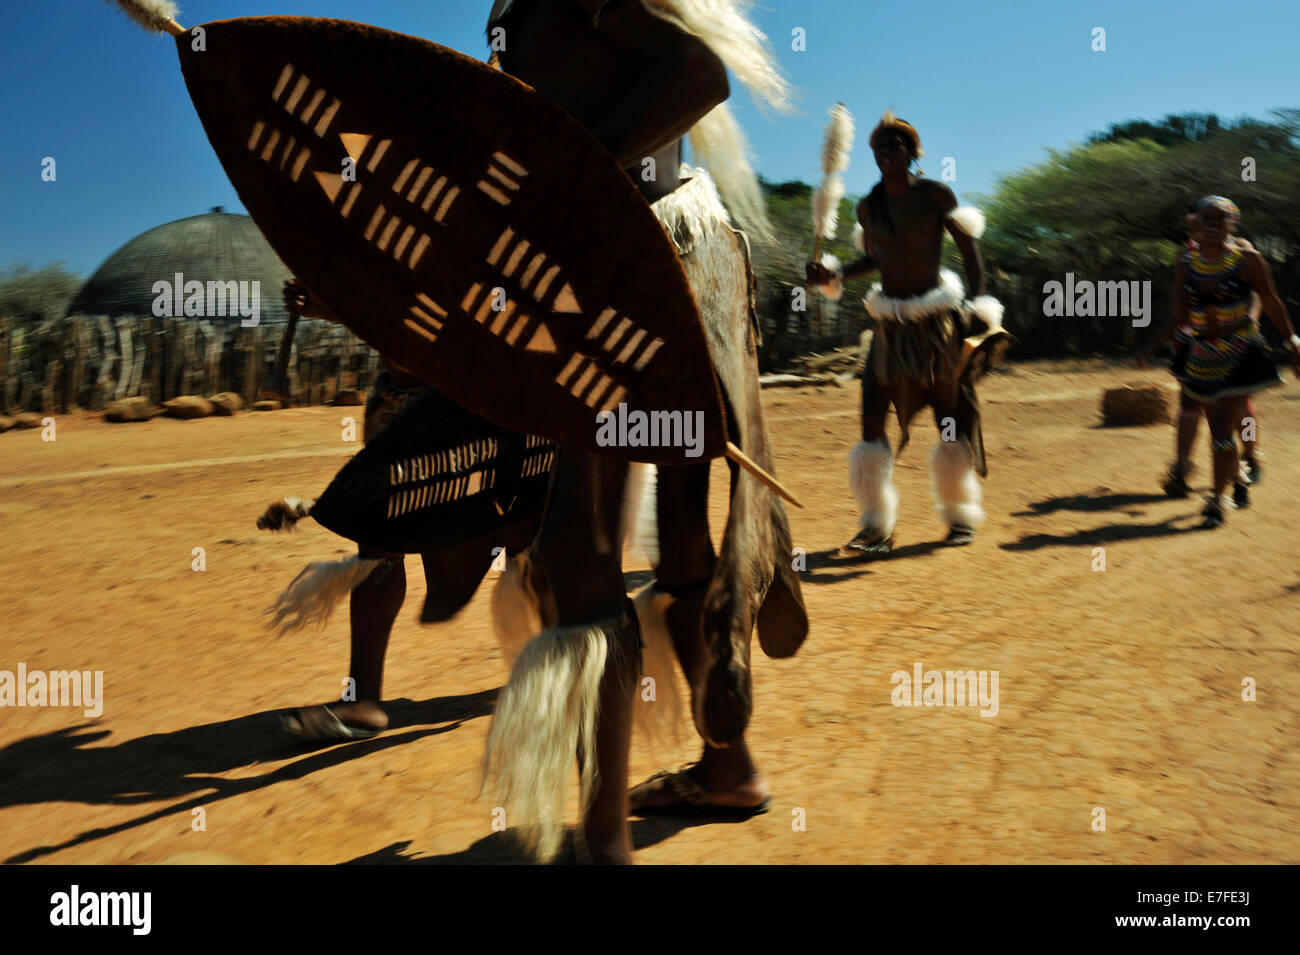 Menschen, Kultur, Erwachsene Zulu Männer, traditionelle zeremonielle Kleidung, Schilde zu Fuß mit Mädchen, Themendorf, Shakaland, KwaZulu-Natal, Südafrika Stockfoto